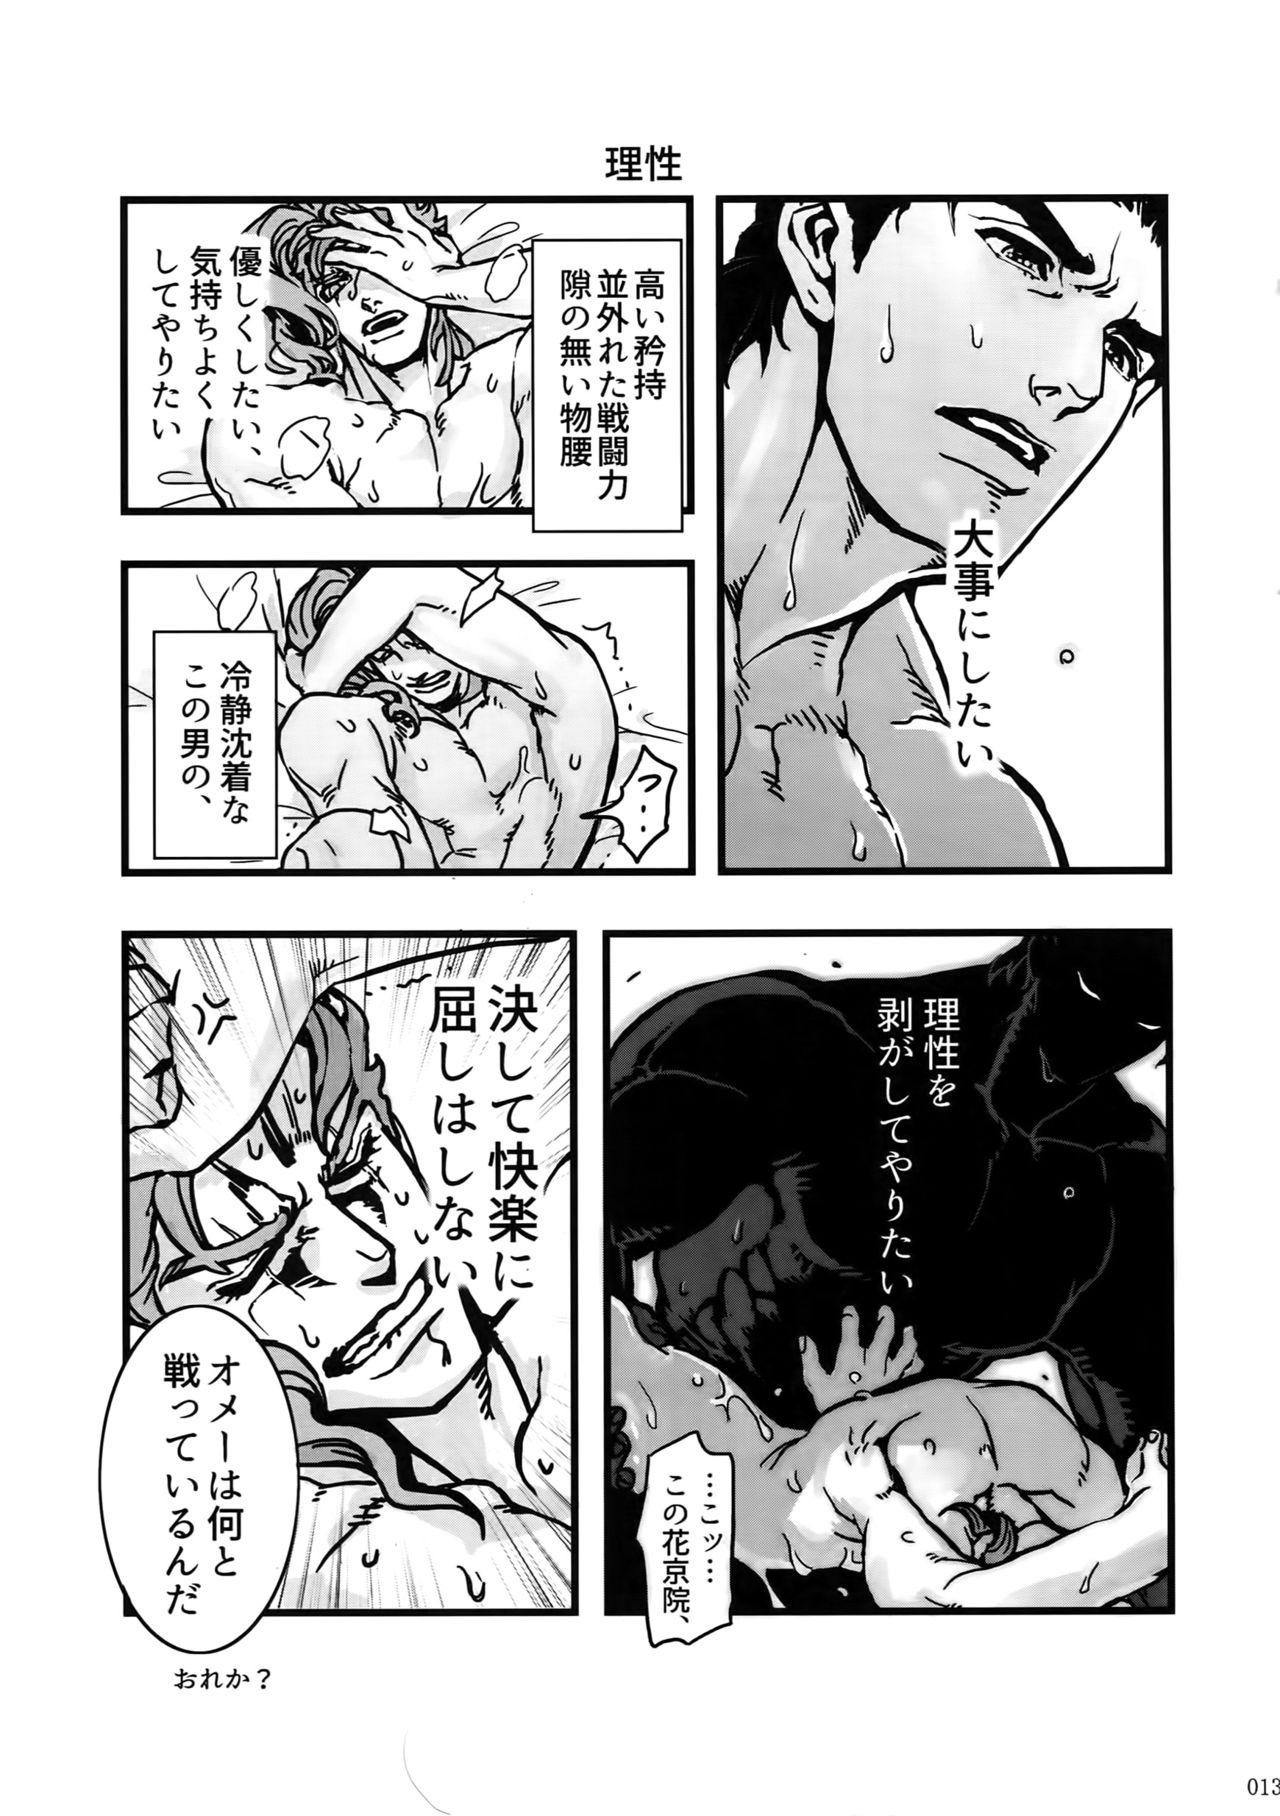 Blowjob NuruNuru JoKa Sairokubon - Jojos bizarre adventure Muscles - Page 12